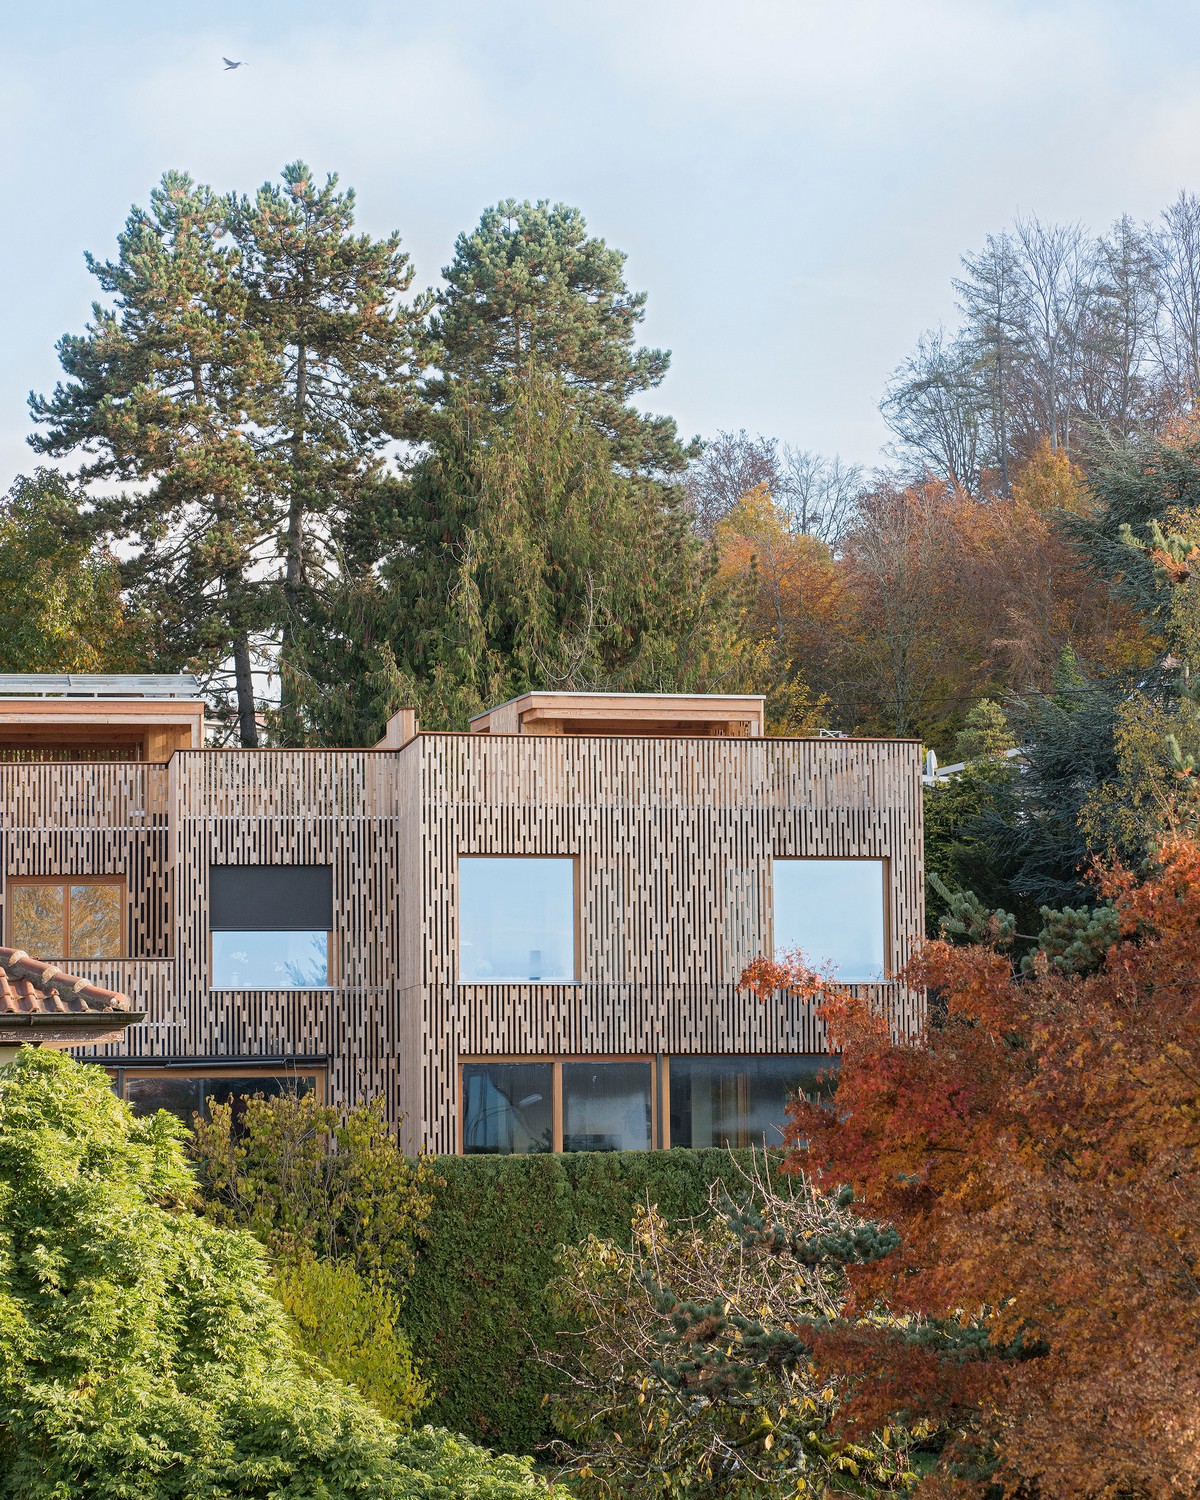 Три смежных дома с деревянным фасадом в Швейцарии